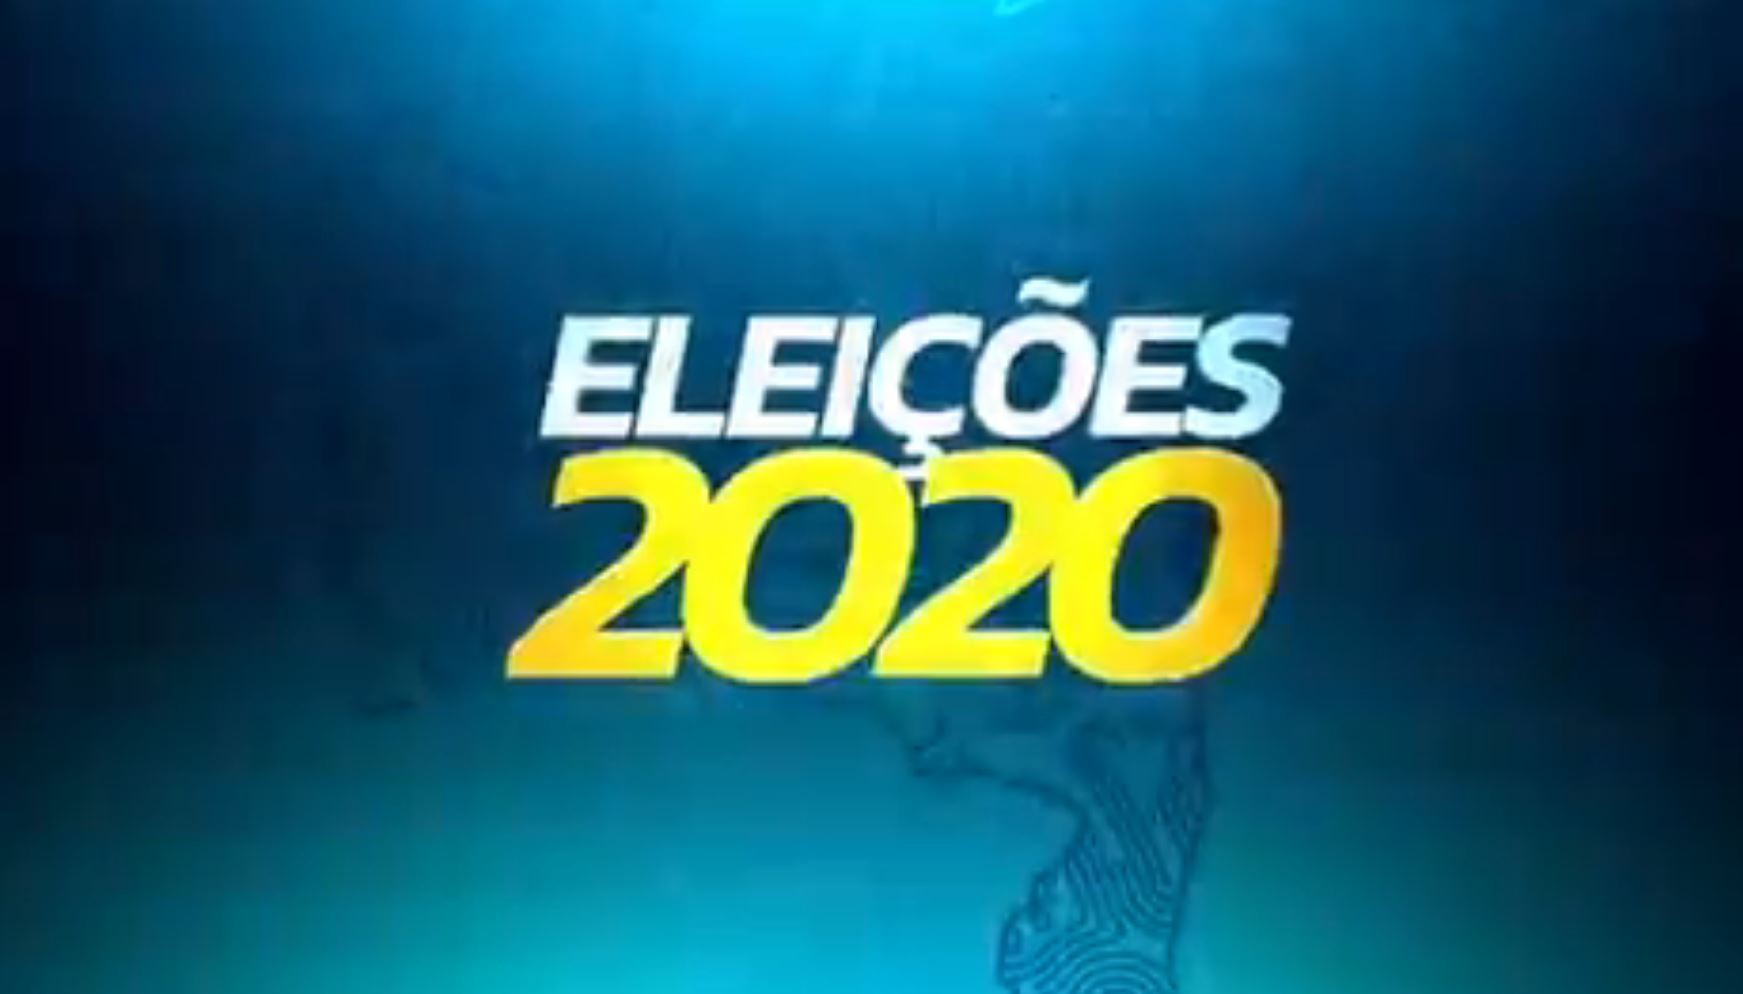 TV Uesb promove primeiro debate entre candidatos à prefeitura de Vitória da Conquista